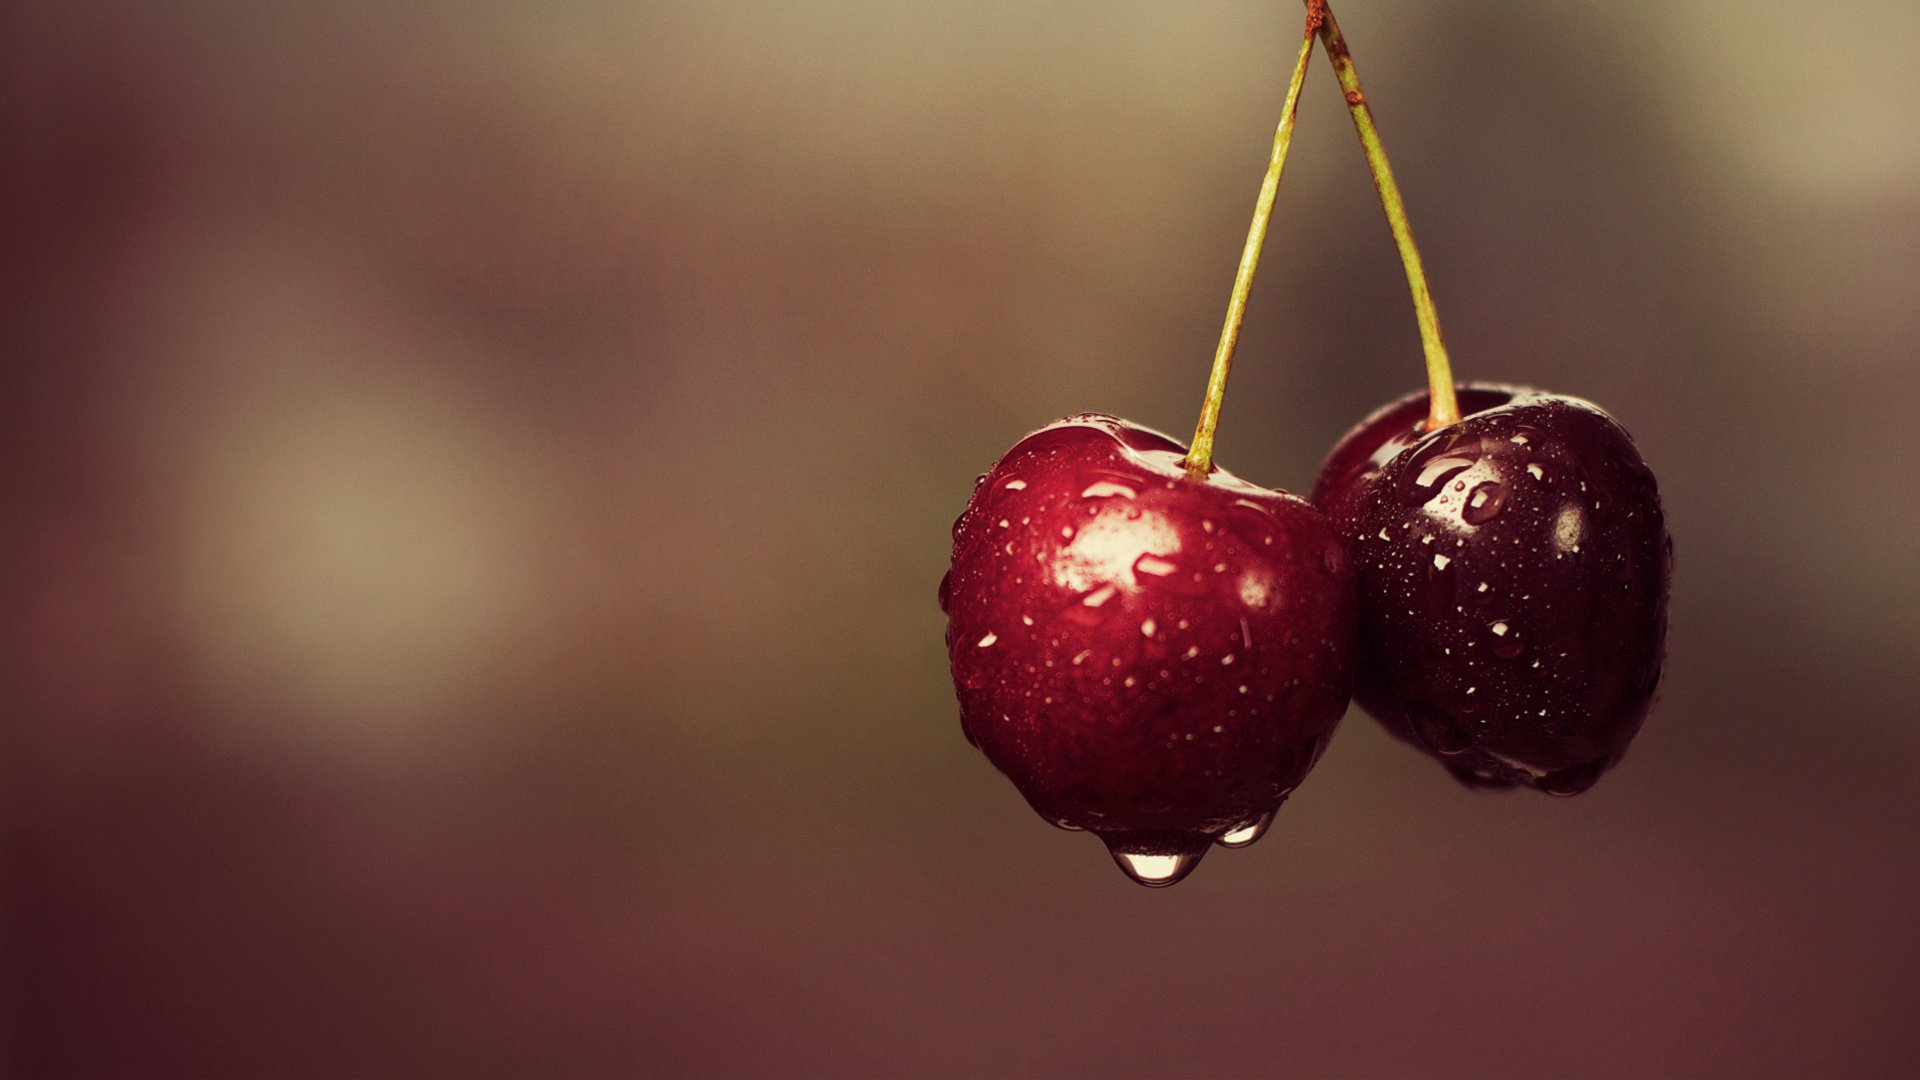 Две спелые вишни с каплями дождя